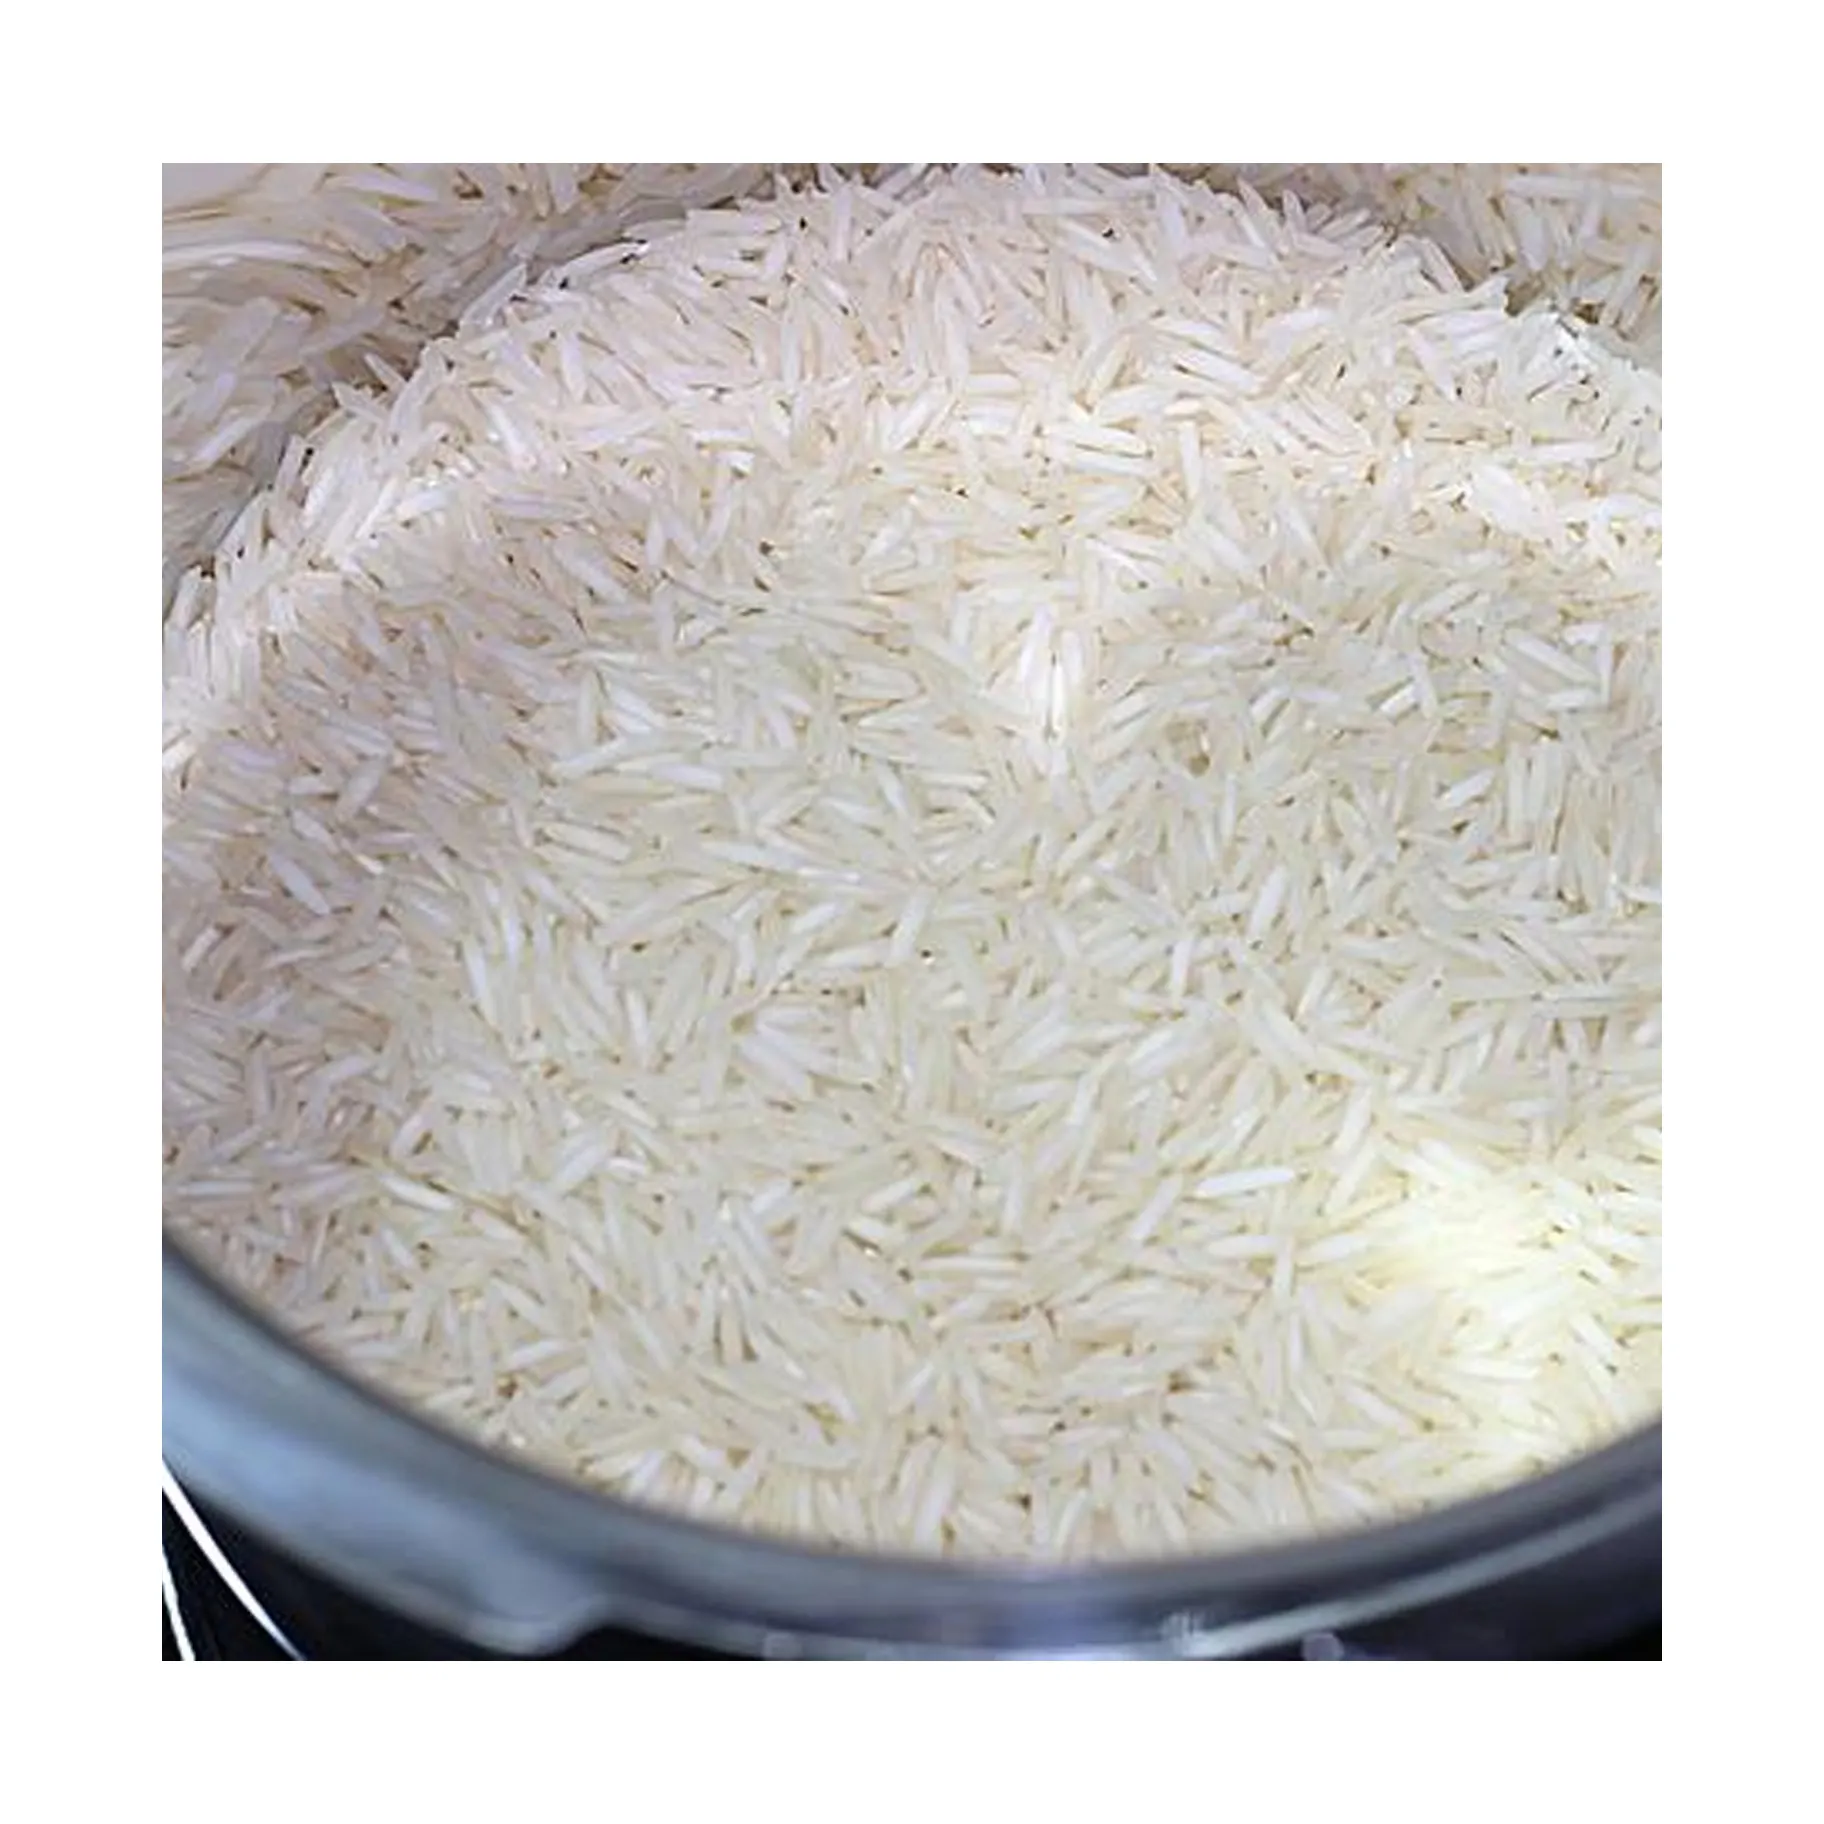 بيع بالجملة / أرز أبيض مكسور بنسبة 5% طويل الحبوب بني، أرز طويل الحبوب المسلوق، أرز محمود صيلا عالي الجودة